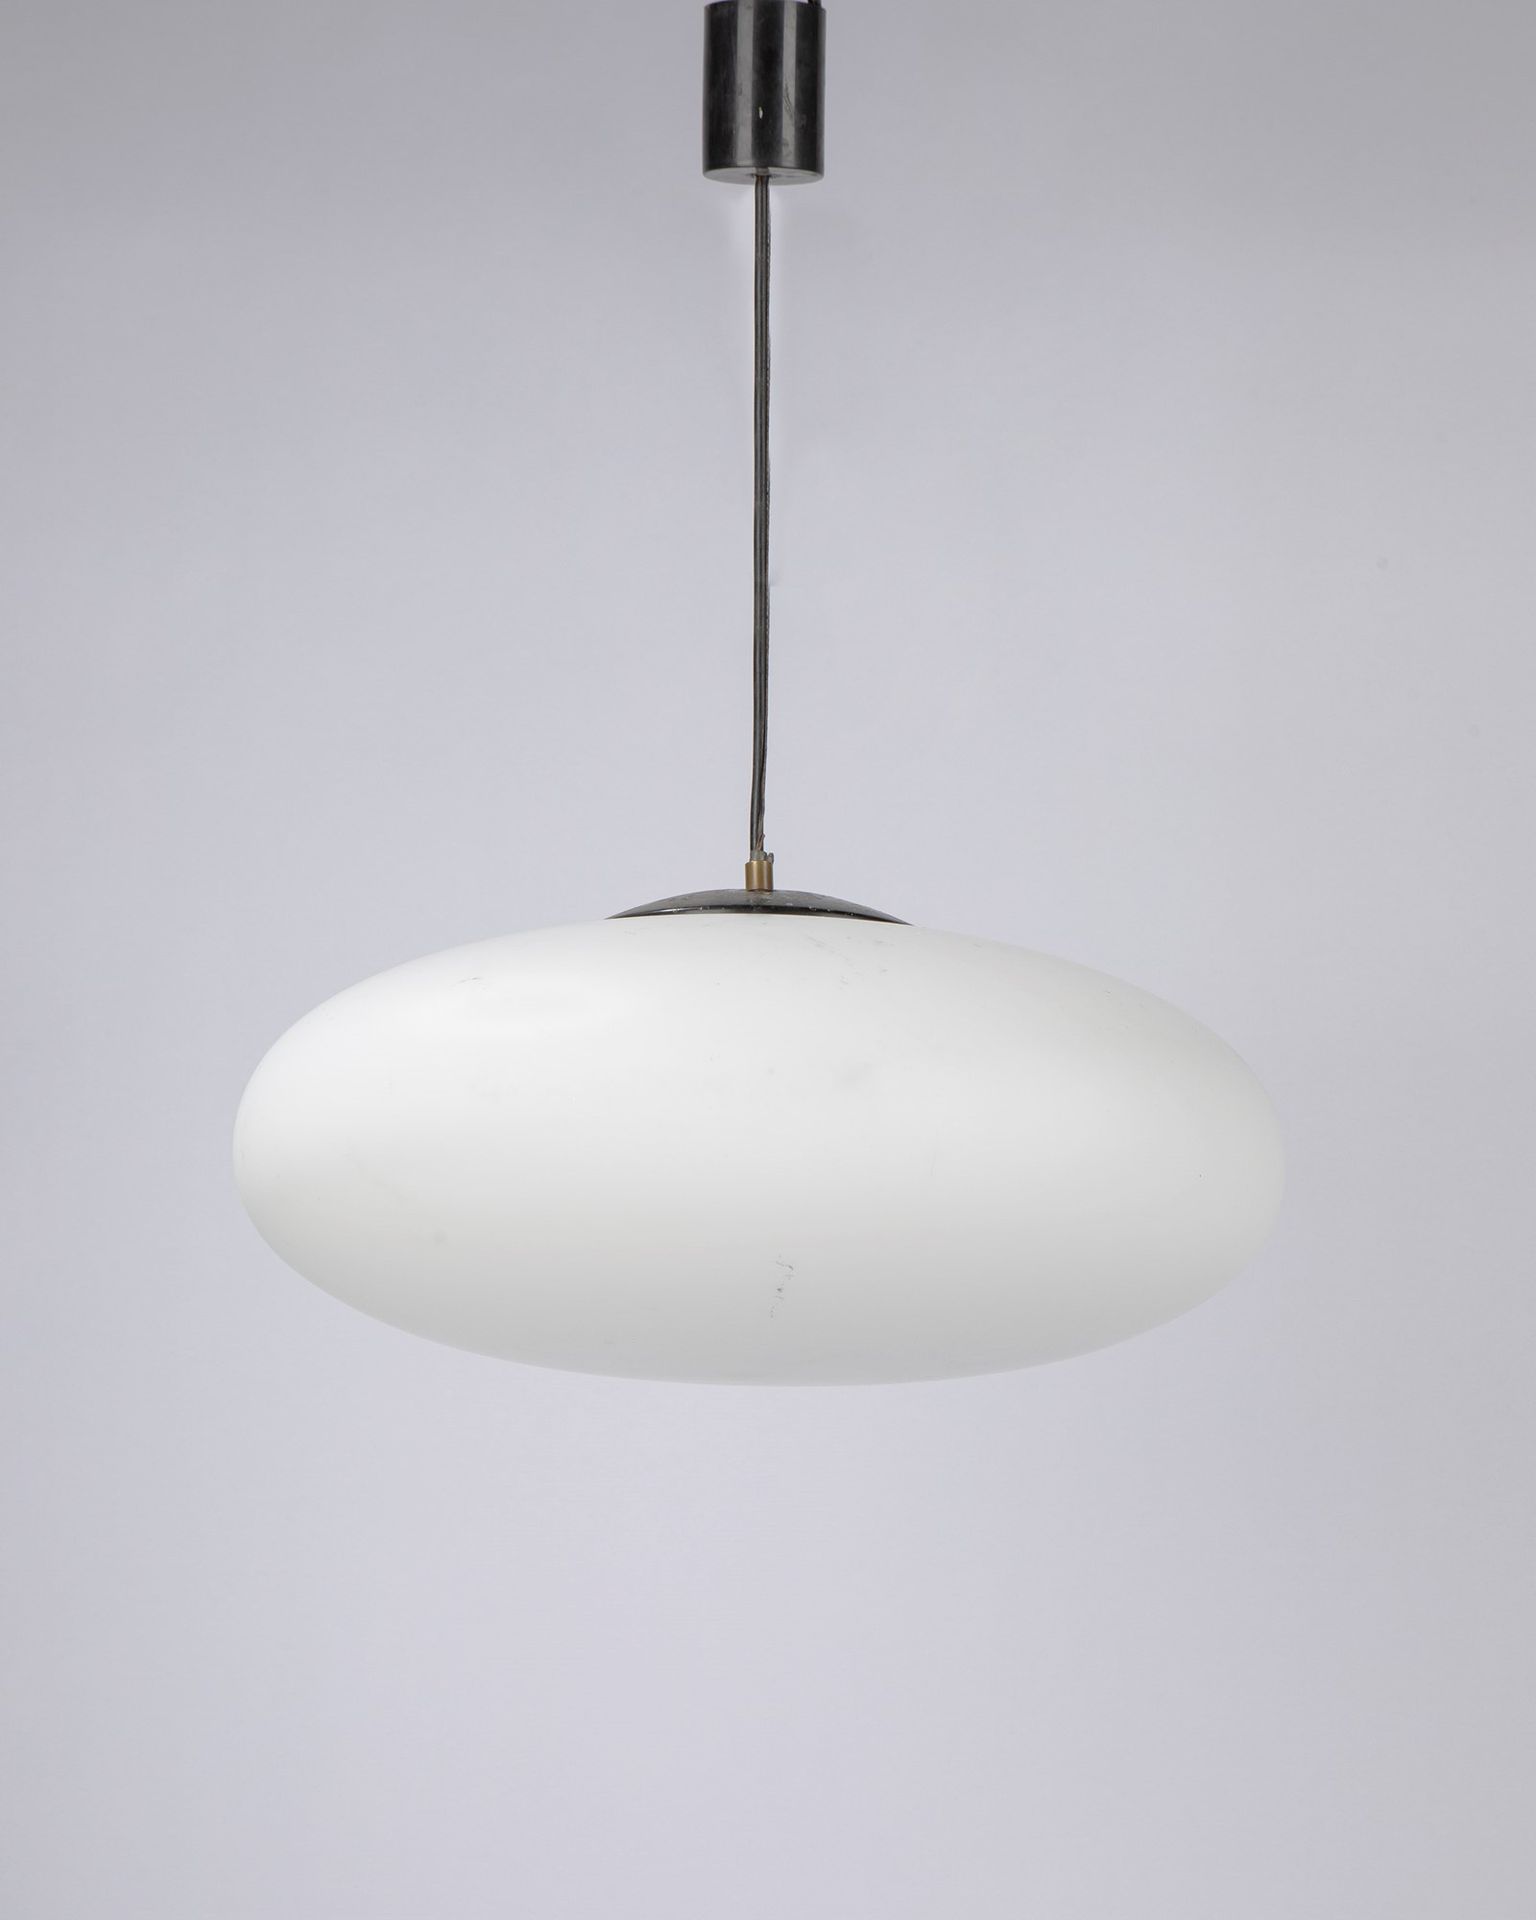 STILNOVO Lampe à suspension, 1950 ca.

Cm 46 x 18
structure métallique et diffus&hellip;